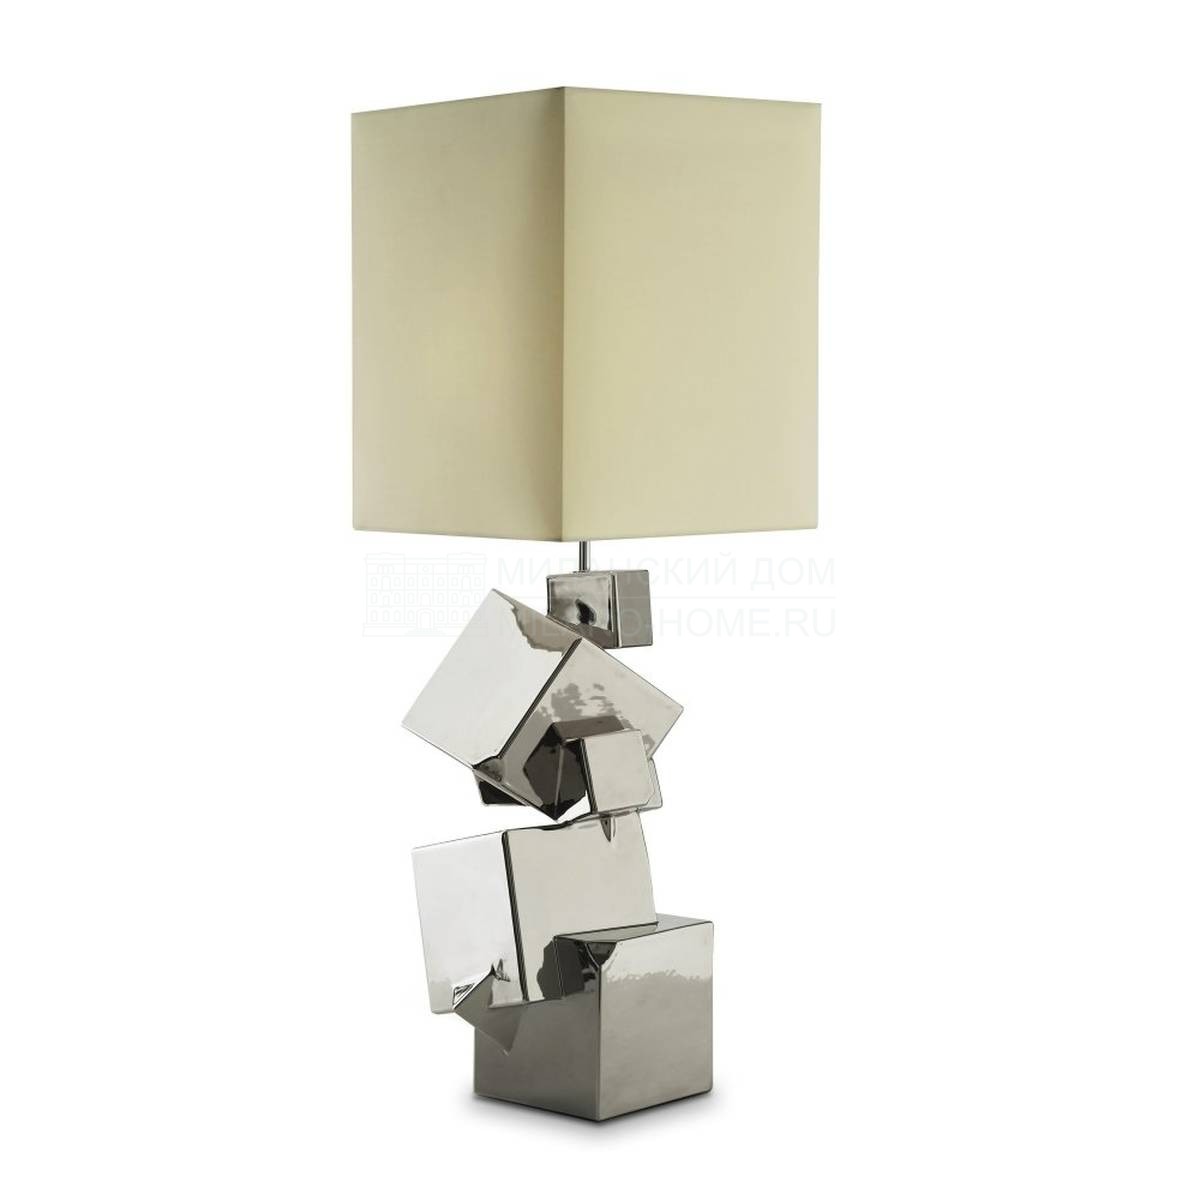 Настольная лампа Pyrite table lamp из Италии фабрики MARIONI